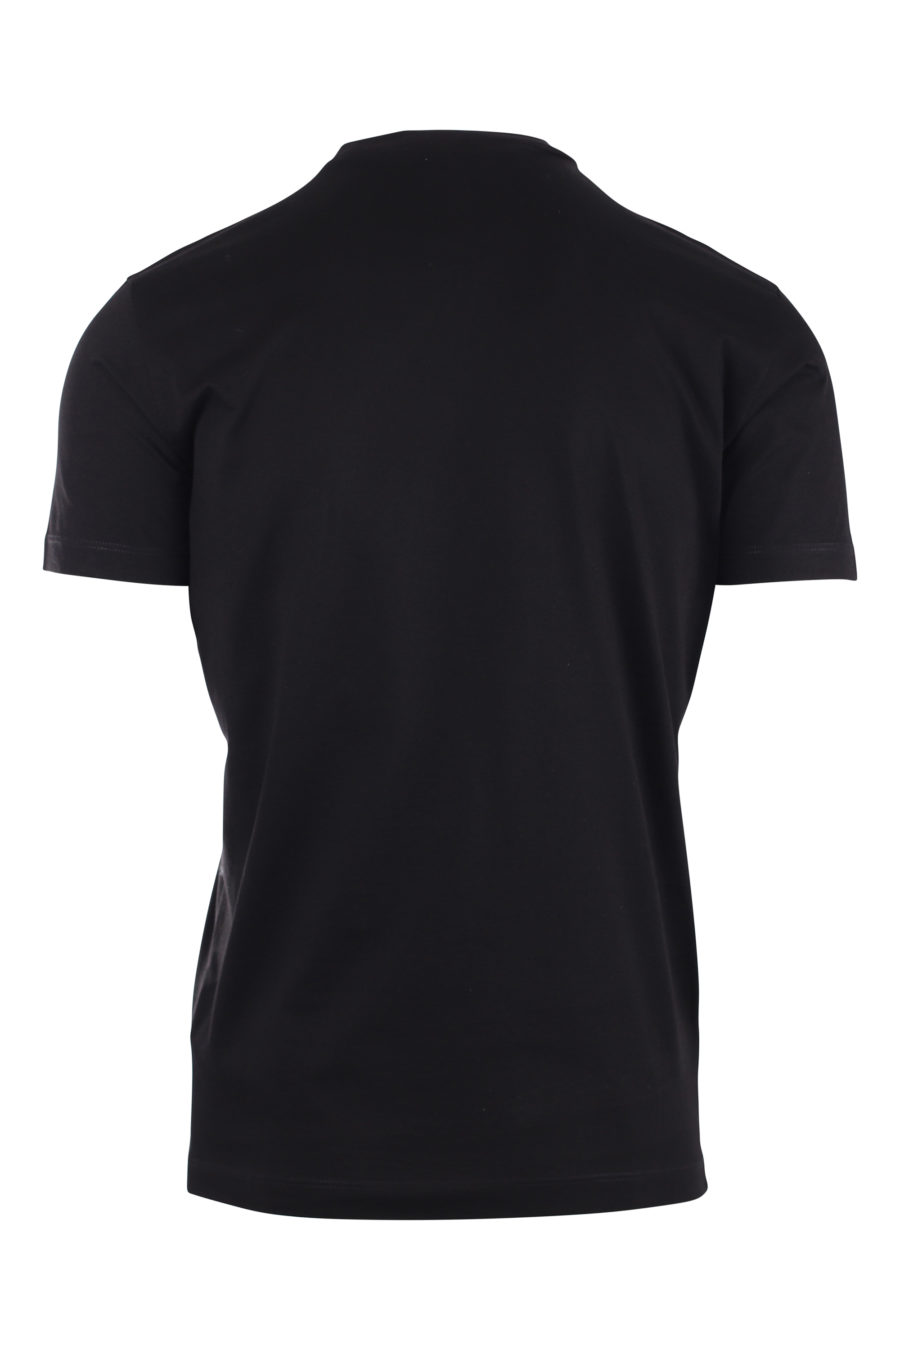 Schwarzes T-Shirt mit Baulogo - IMG 9715